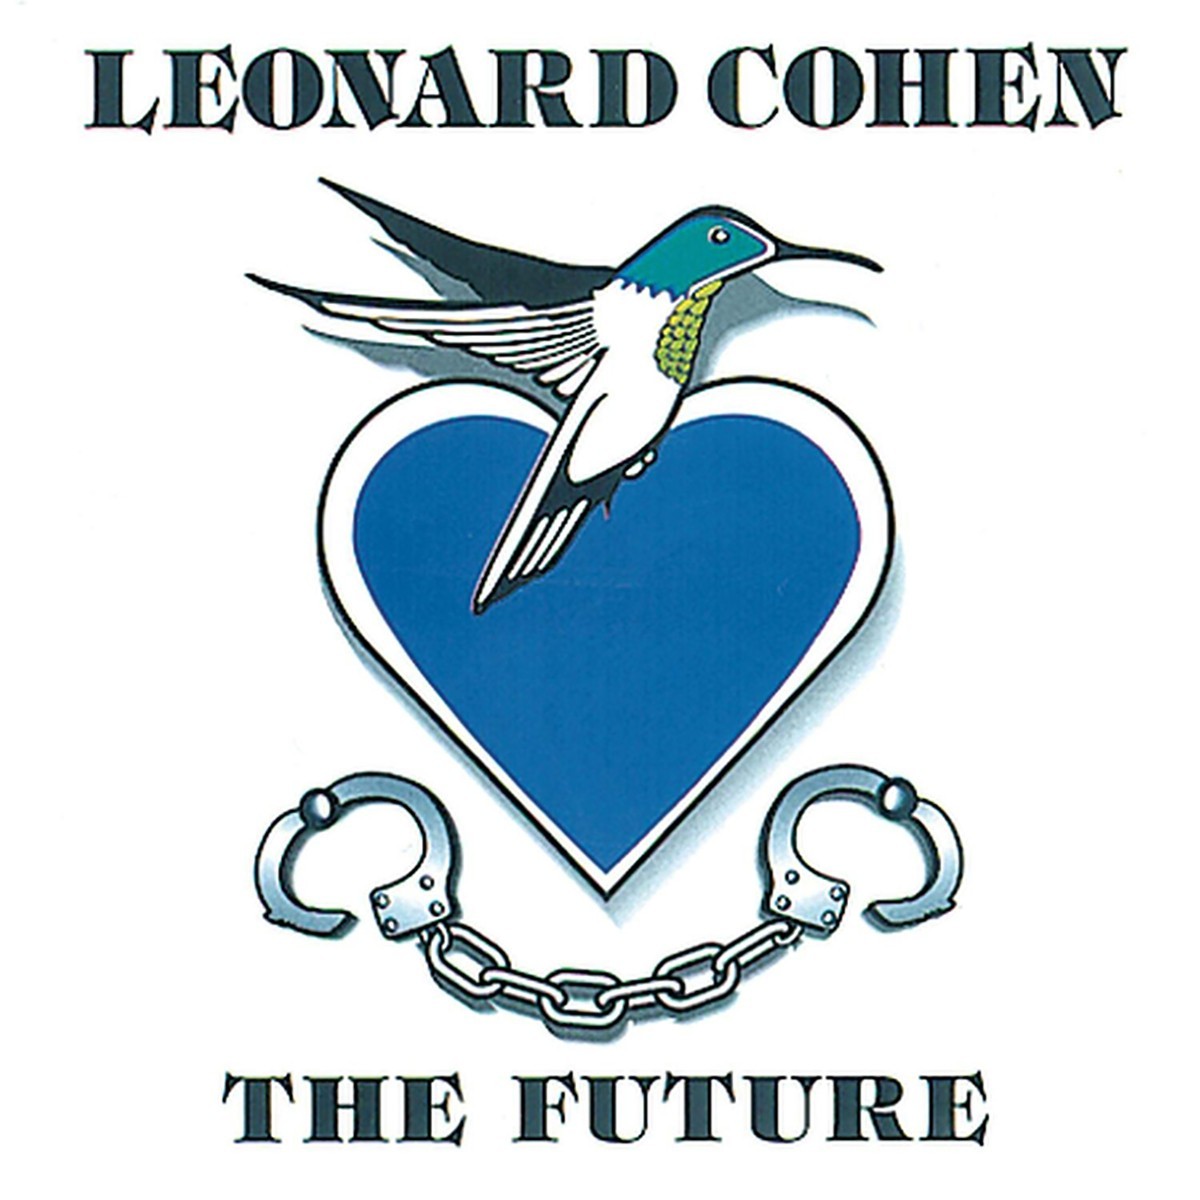 Album cover of "The Future"